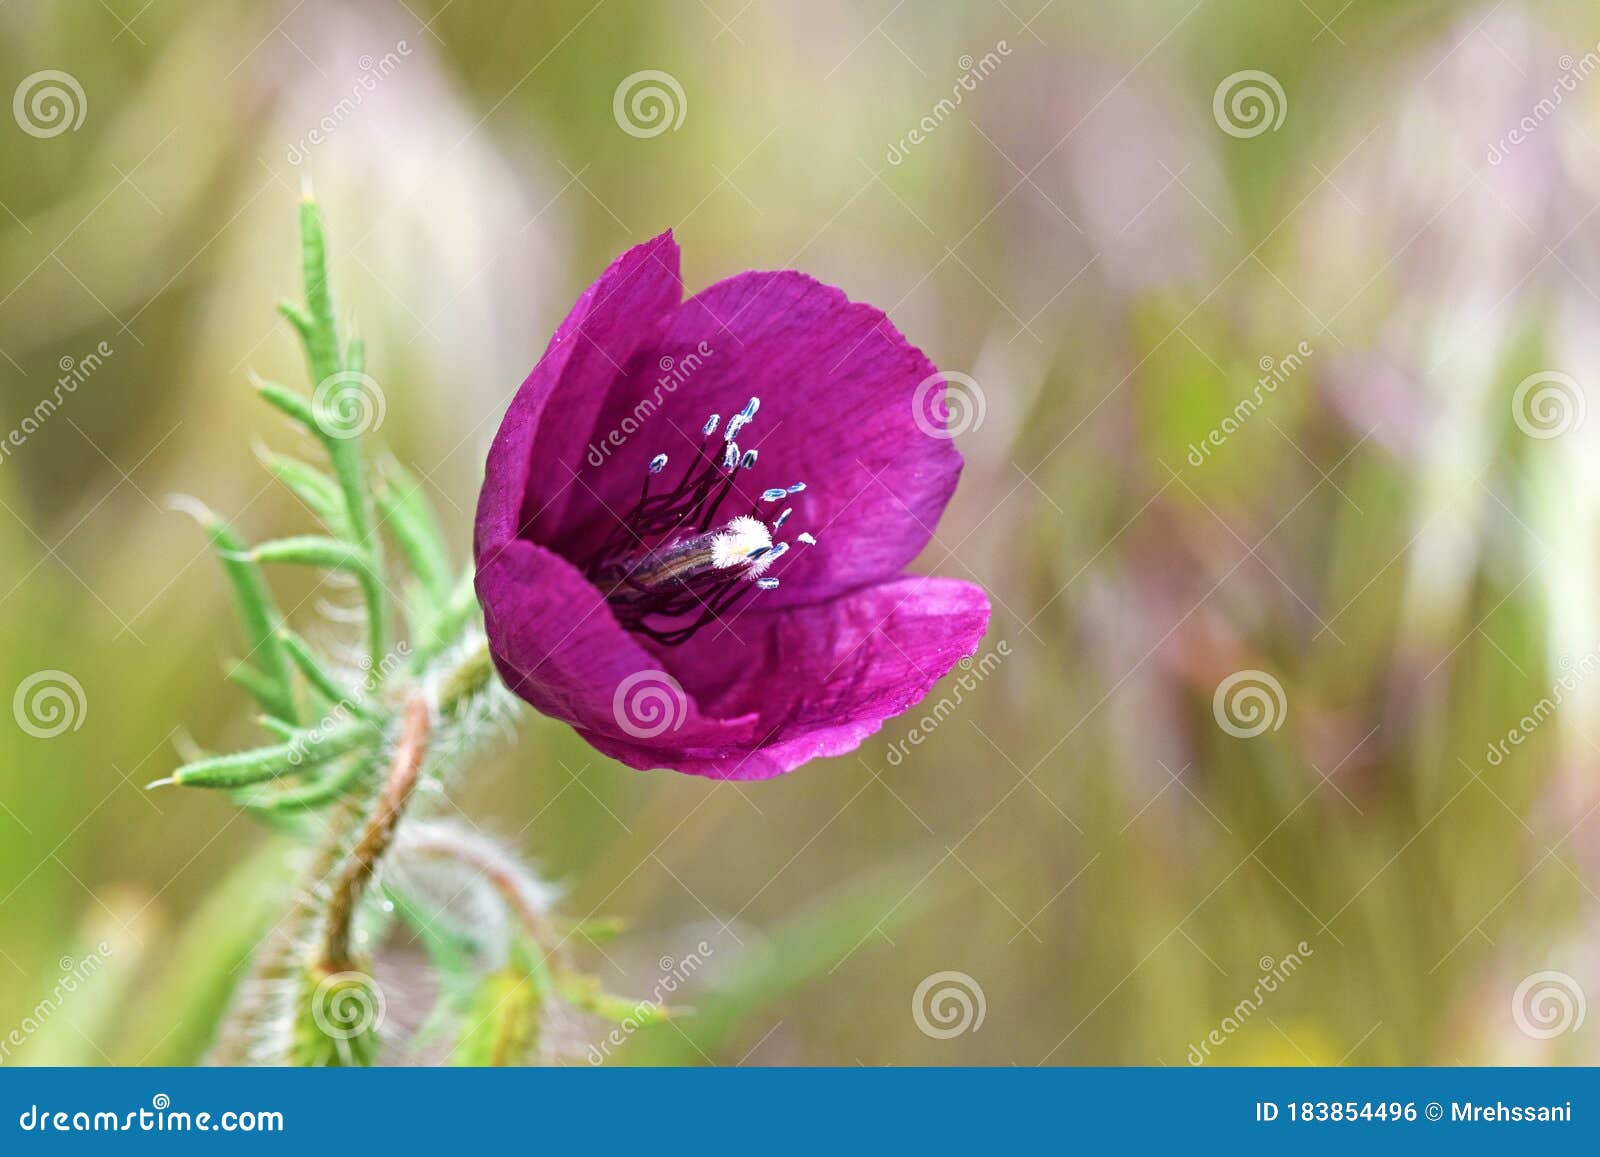 roemeria hybrida flower in wild